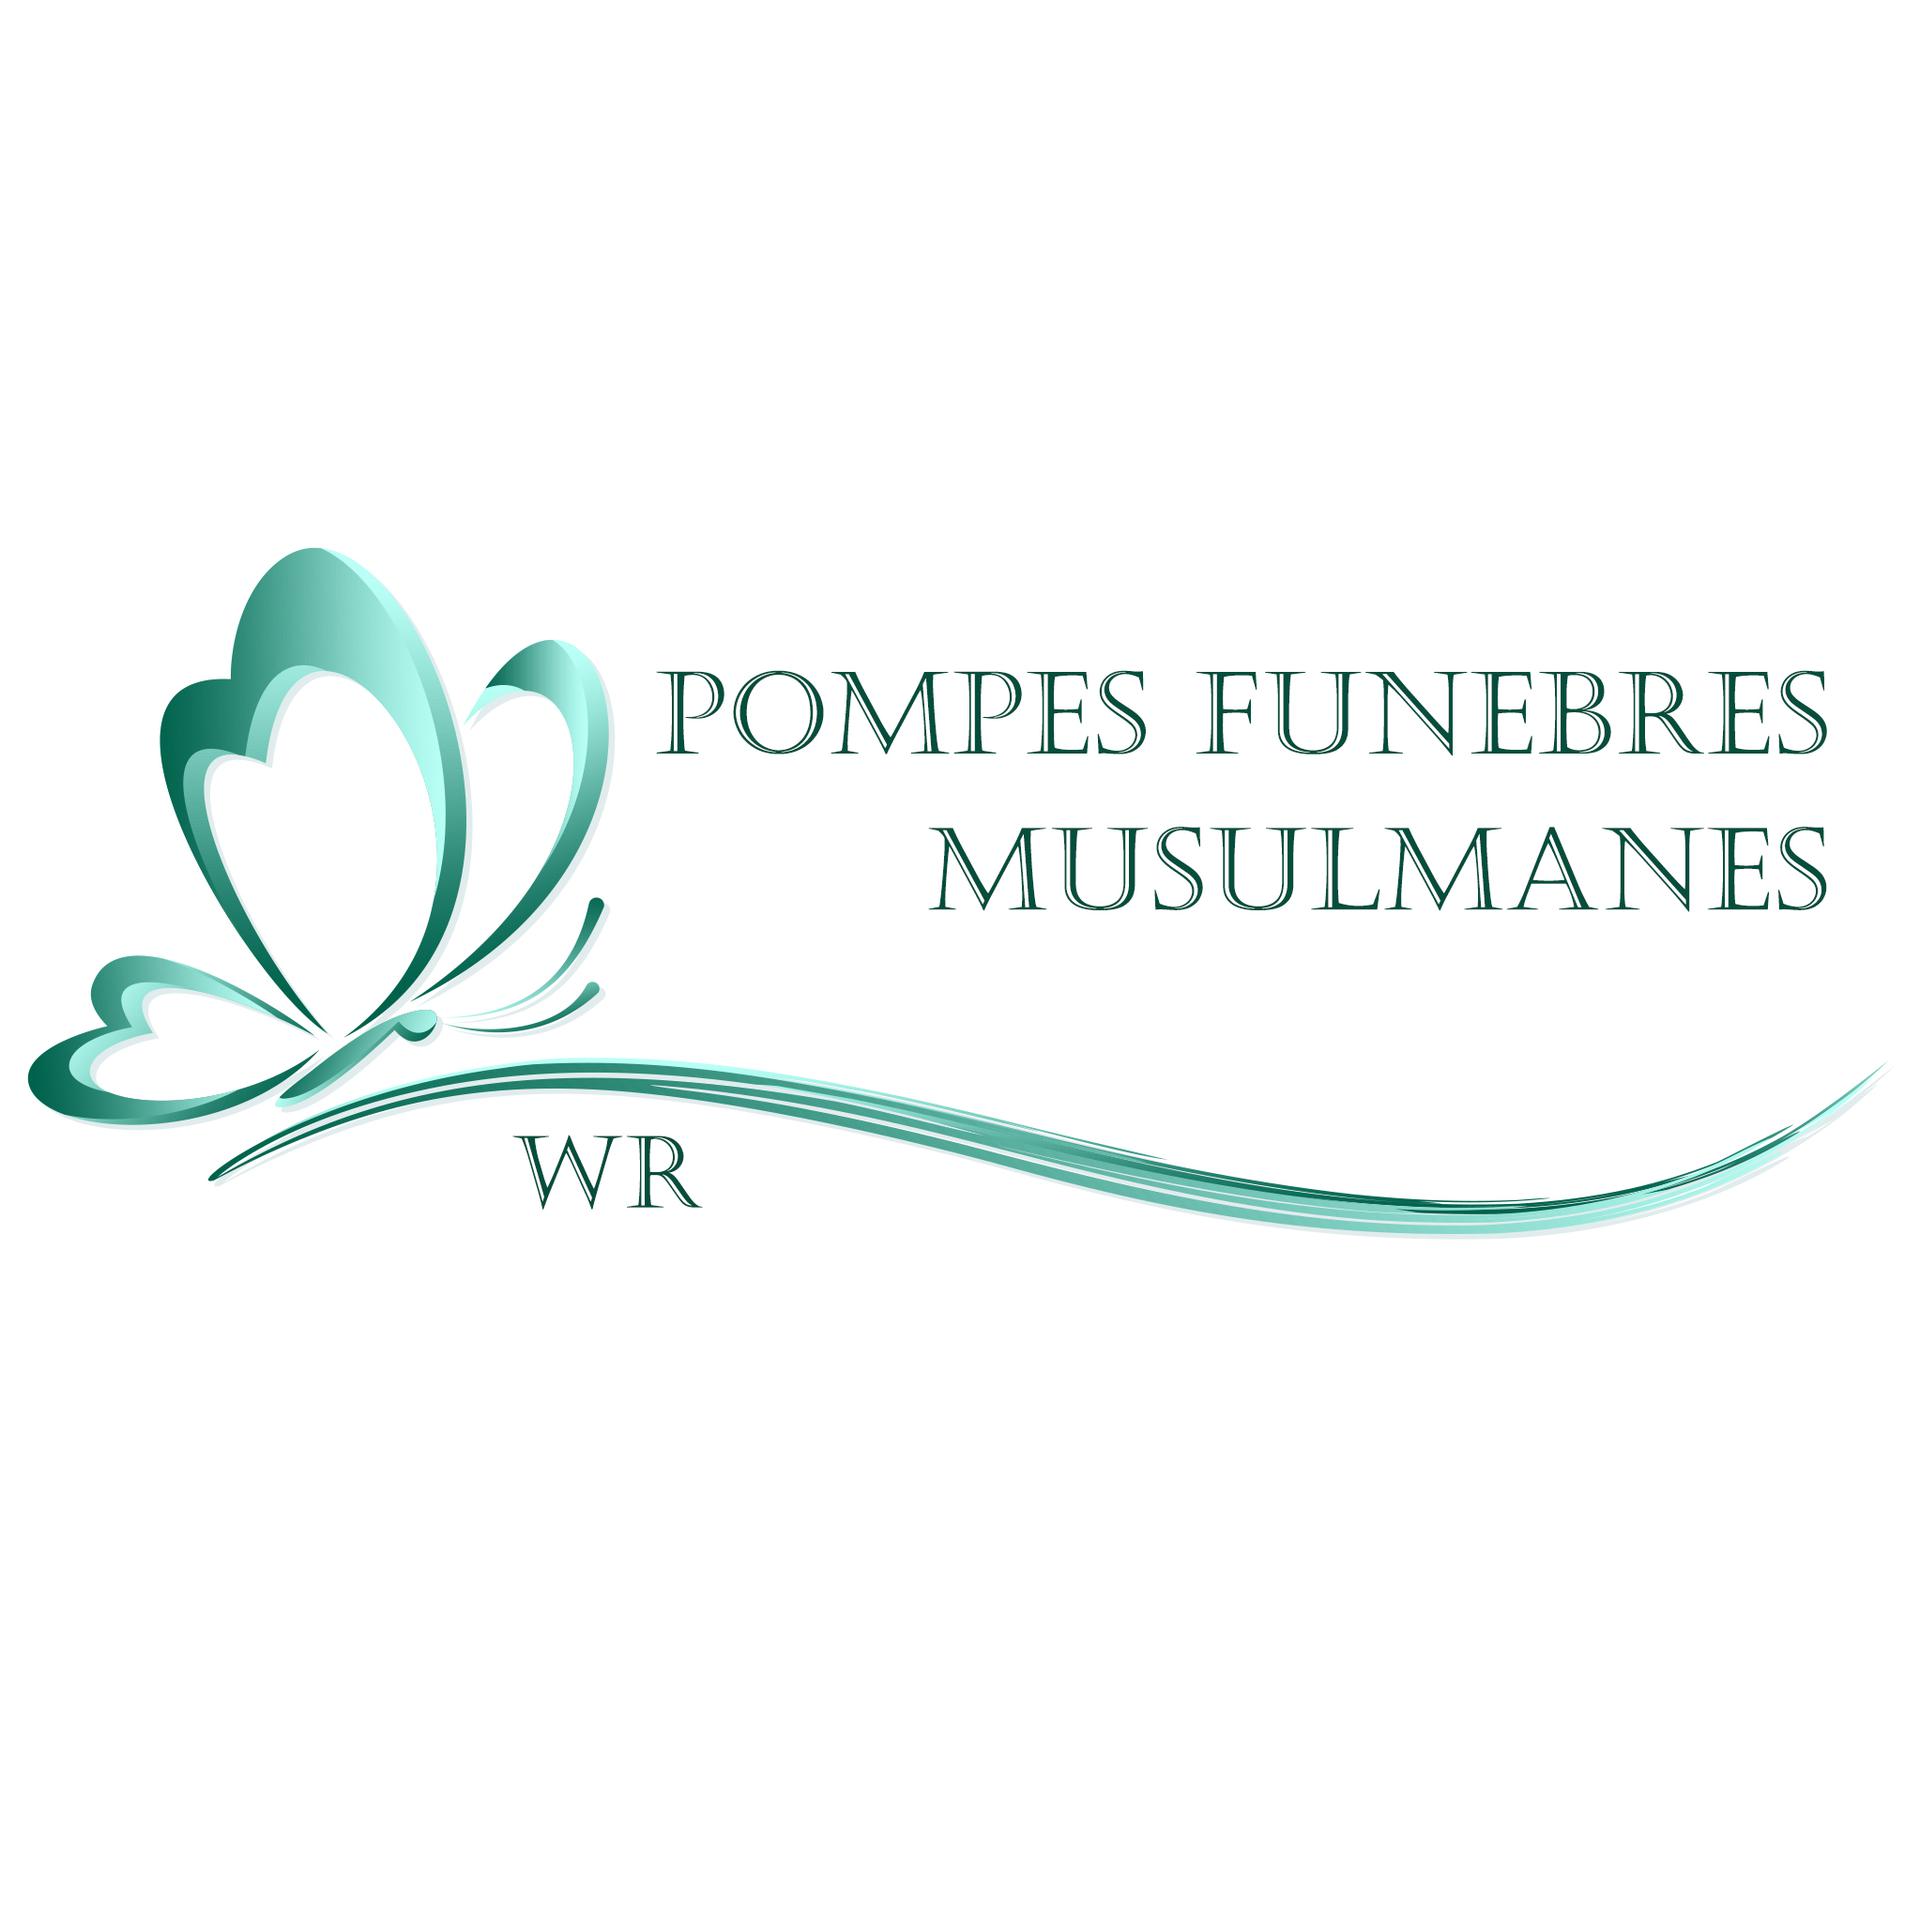 WR POMPE FUNEBRE pompes funèbres, inhumation et crémation (fournitures)